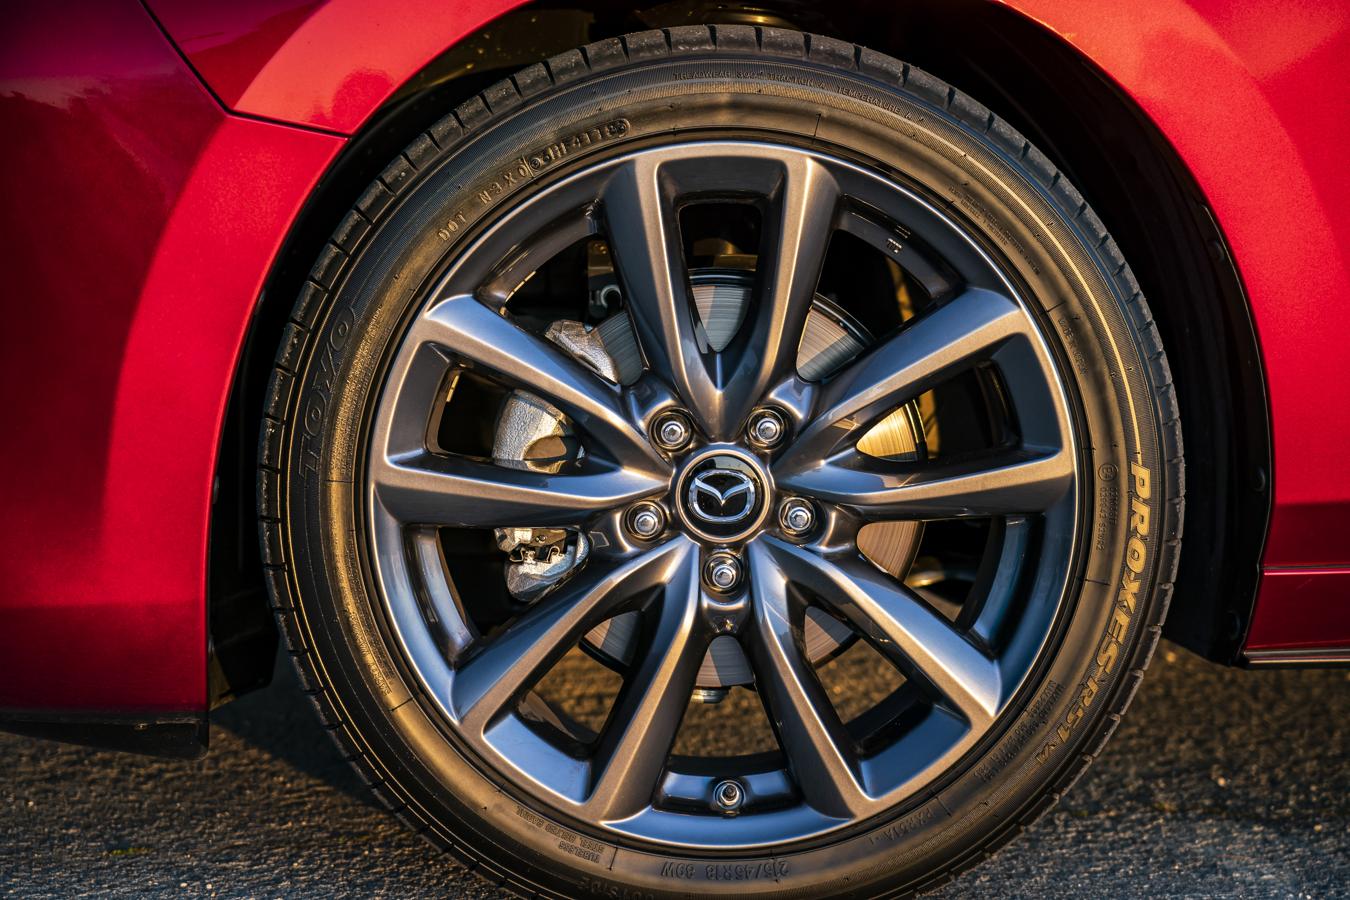 Fotogalería: elegancia y artesanía en el nuevo Mazda3 2019